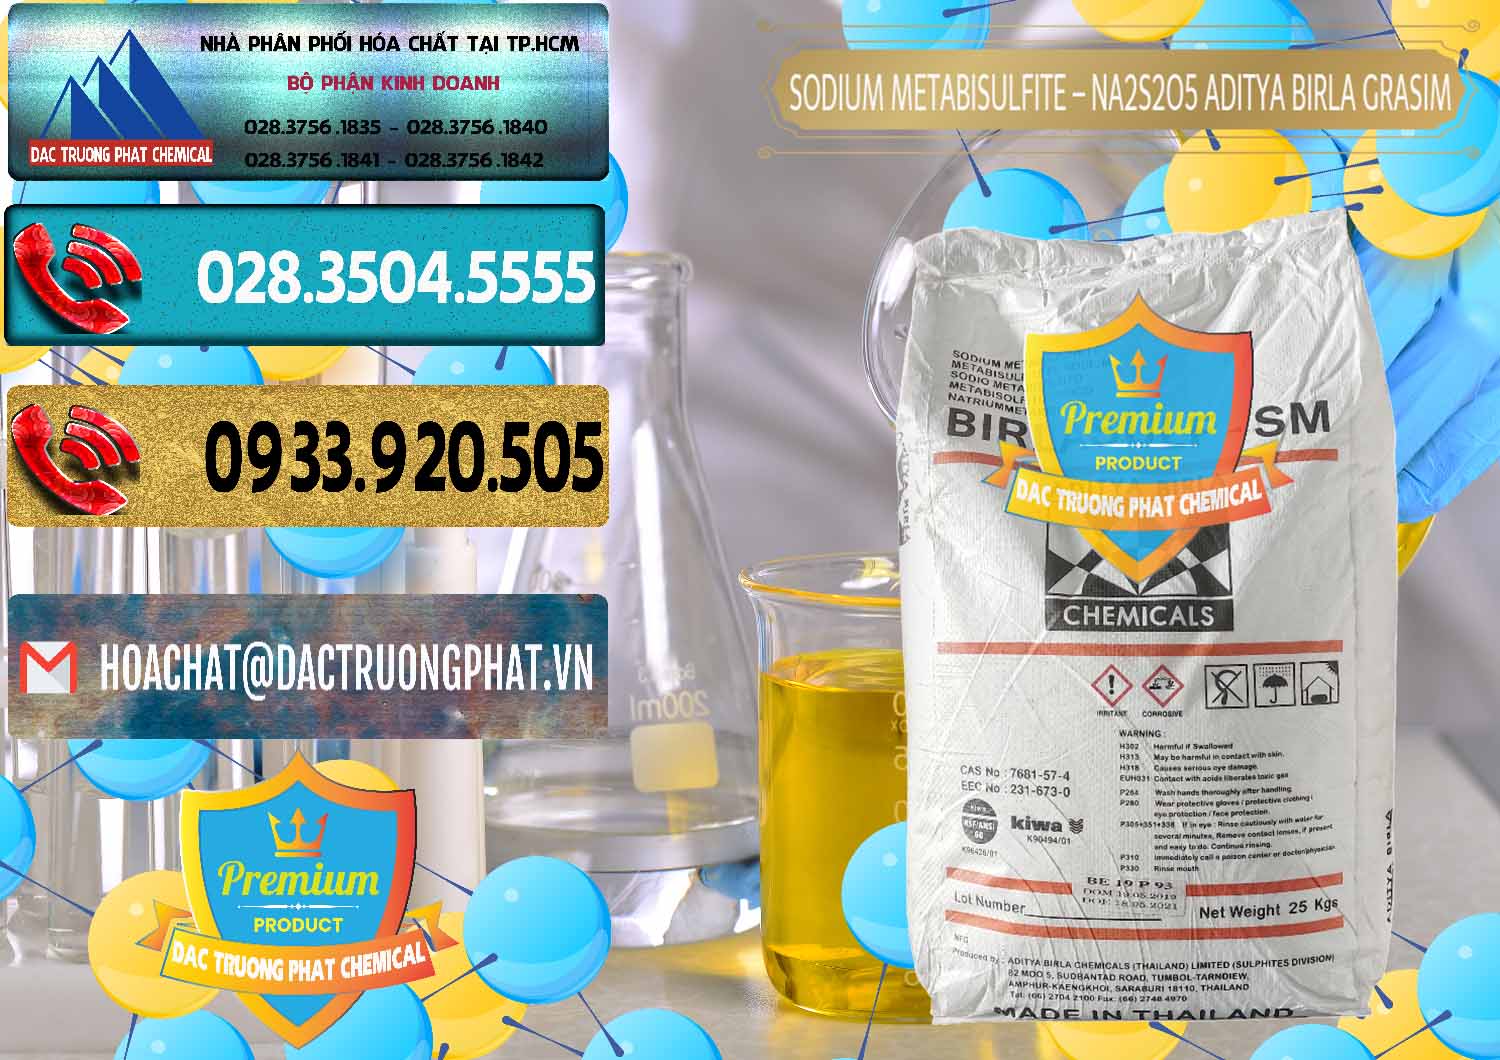 Cty chuyên bán ( cung ứng ) Sodium Metabisulfite - NA2S2O5 Thái Lan Aditya Birla Grasim - 0144 - Cty chuyên nhập khẩu ( cung cấp ) hóa chất tại TP.HCM - hoachatdetnhuom.com